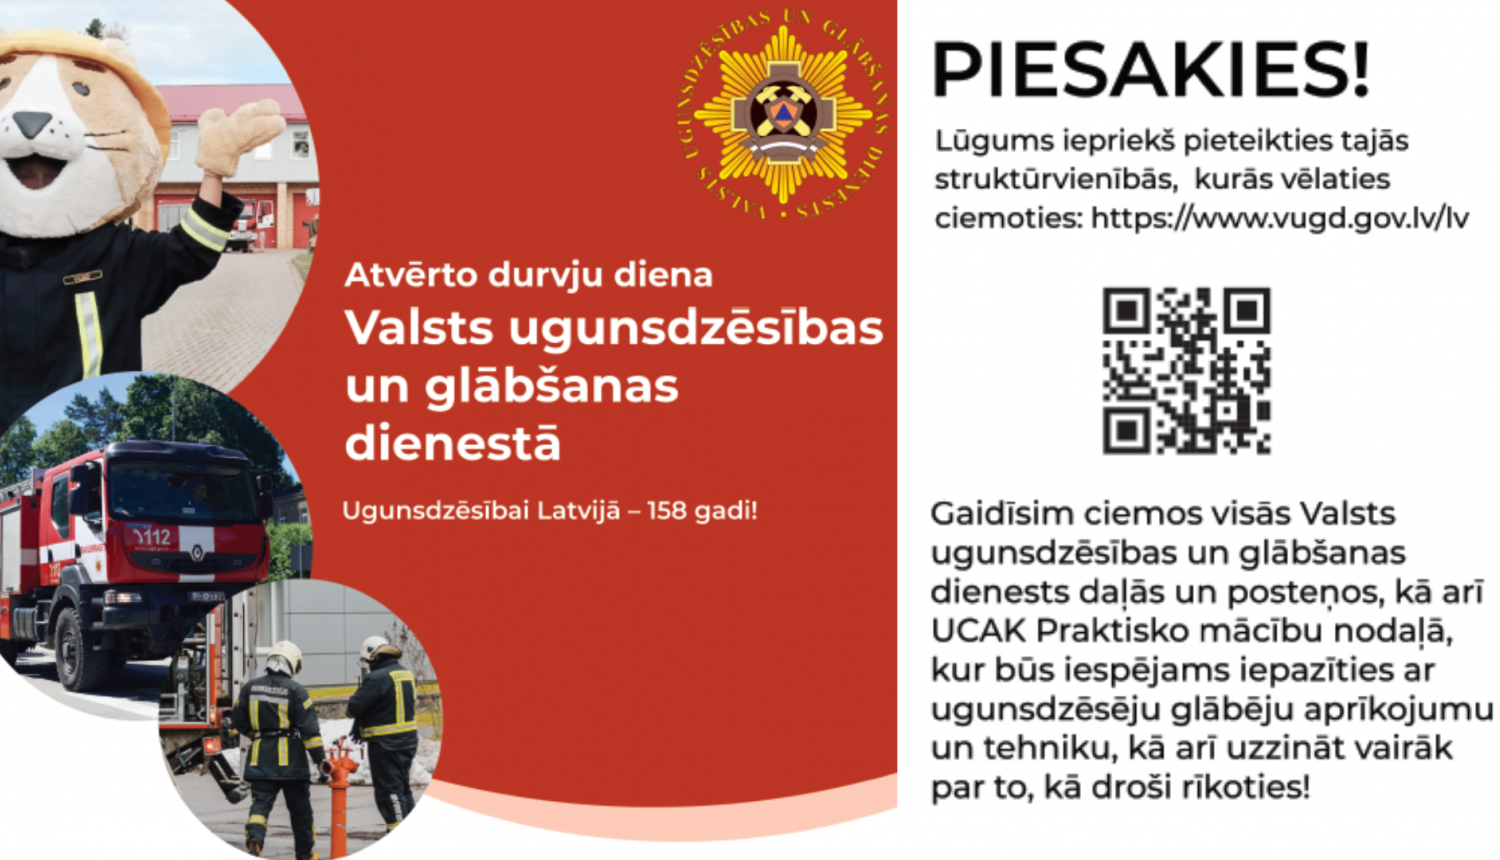 Kreisajā malā trīs apļos foto: vienā lūsītis Ugunsdzēsējs glābējs Guntiņš, otrā VUGD sarkani baltā automašīna, bet trešajā divi ugunsdzēsēji glābēji. Blakus uz sarkana fona balts teksts: Atvērto durvju diena Valsts ugunsdzēsības un glābšanas dienestā. Ugunsdzēsībai Latvijā - 158 gadi. Labajā malā papildu informācija par pieteikšanos